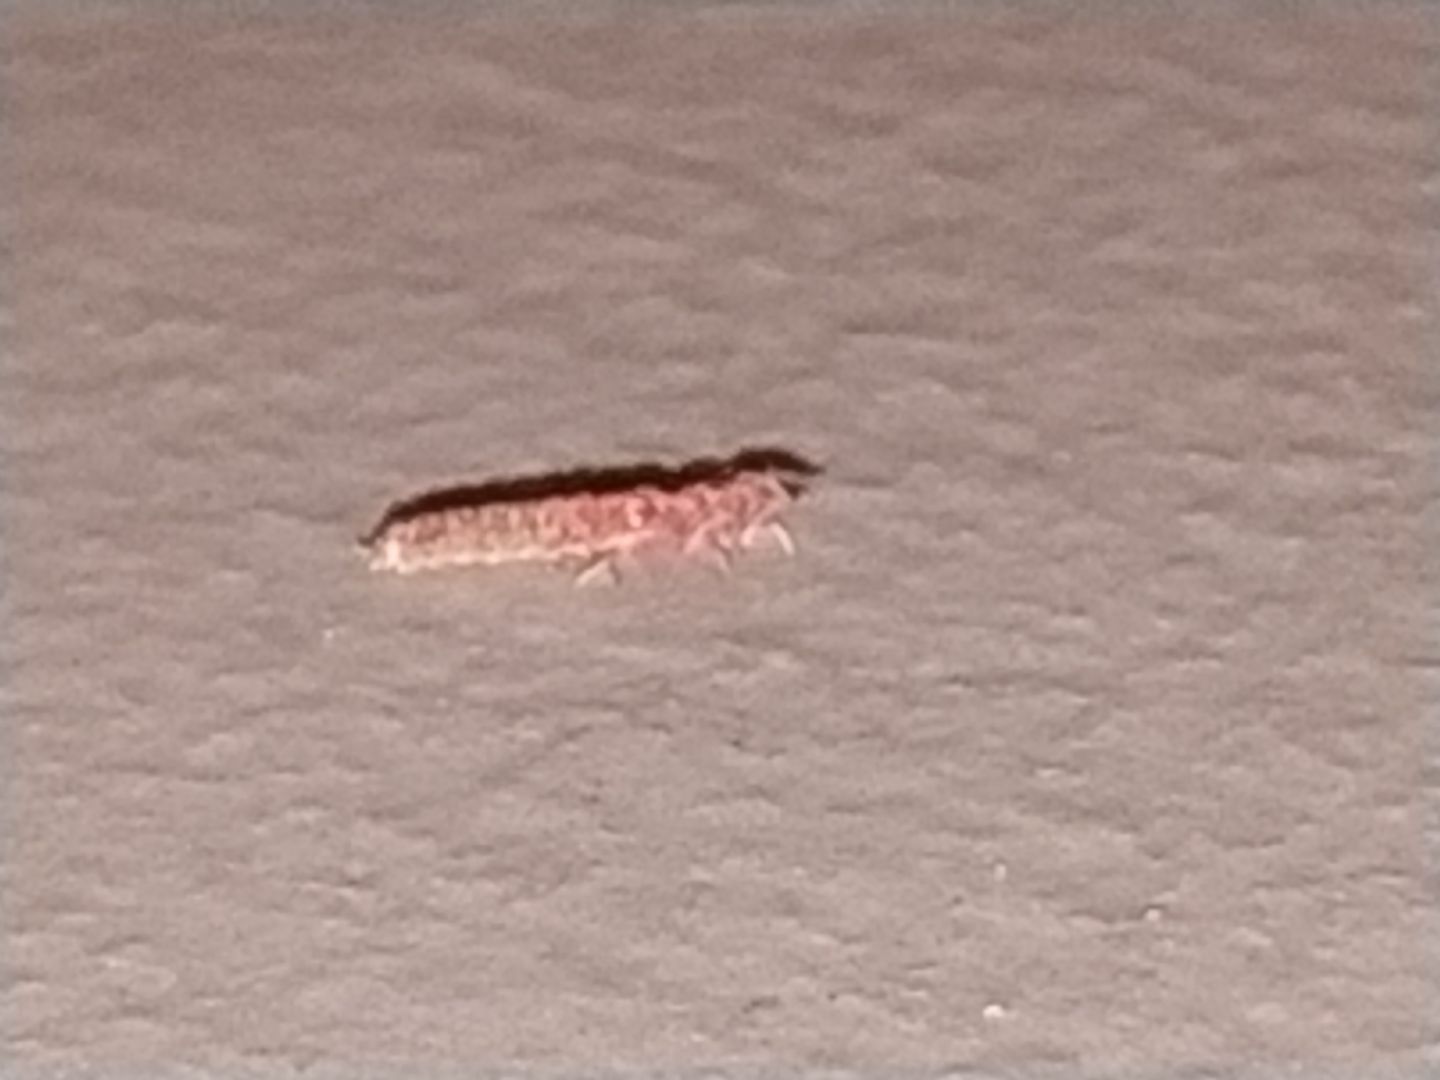 Non riesco a riconoscere questa larva: probabile Malachiidae